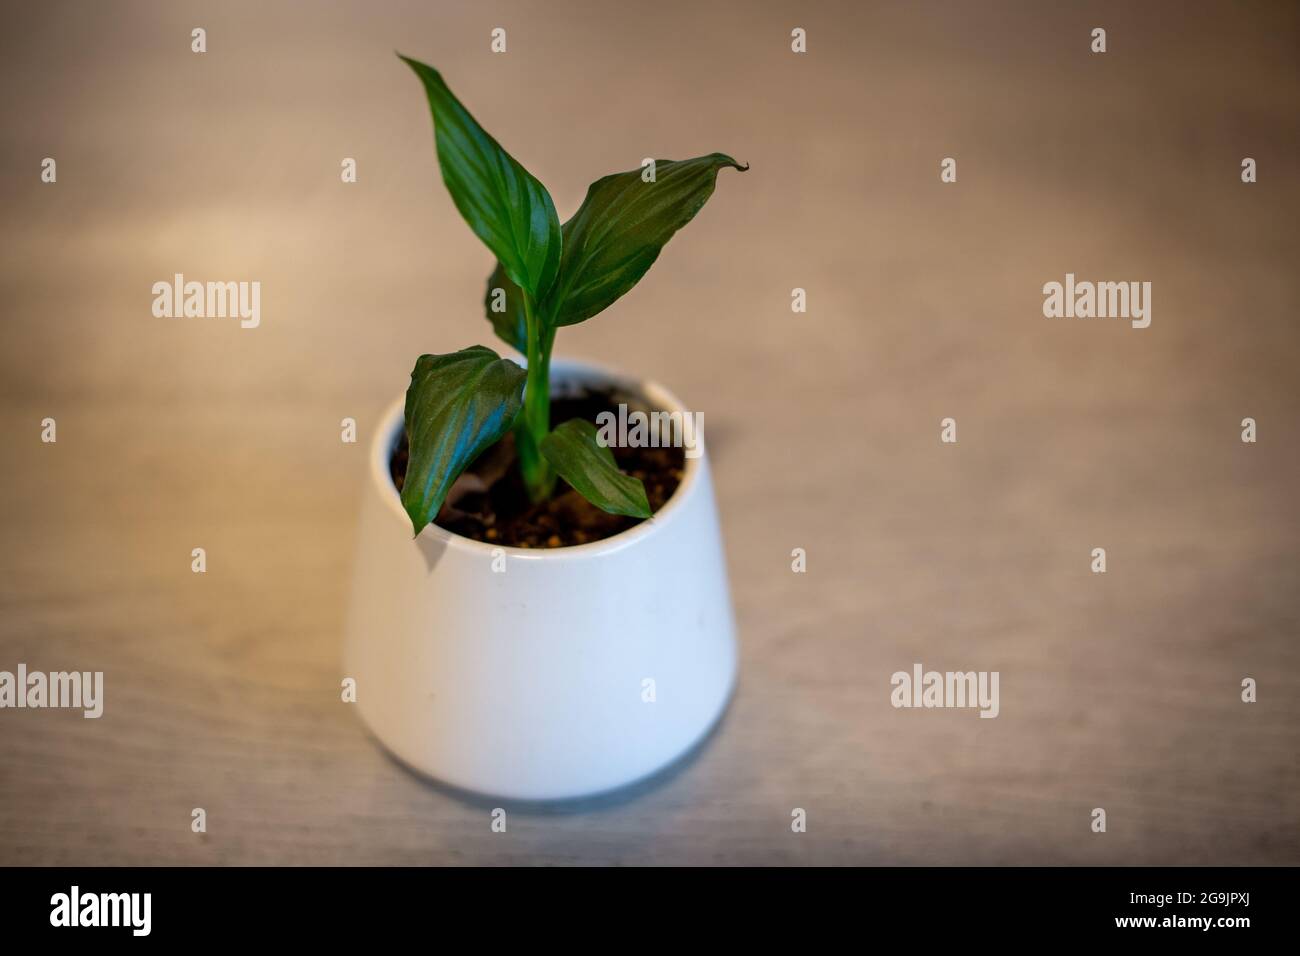 Un bebé spathiphyllum, o lirio de la paz, creciendo en una olla blanca y será una planta ideal de la casa con flores blancas Foto de stock